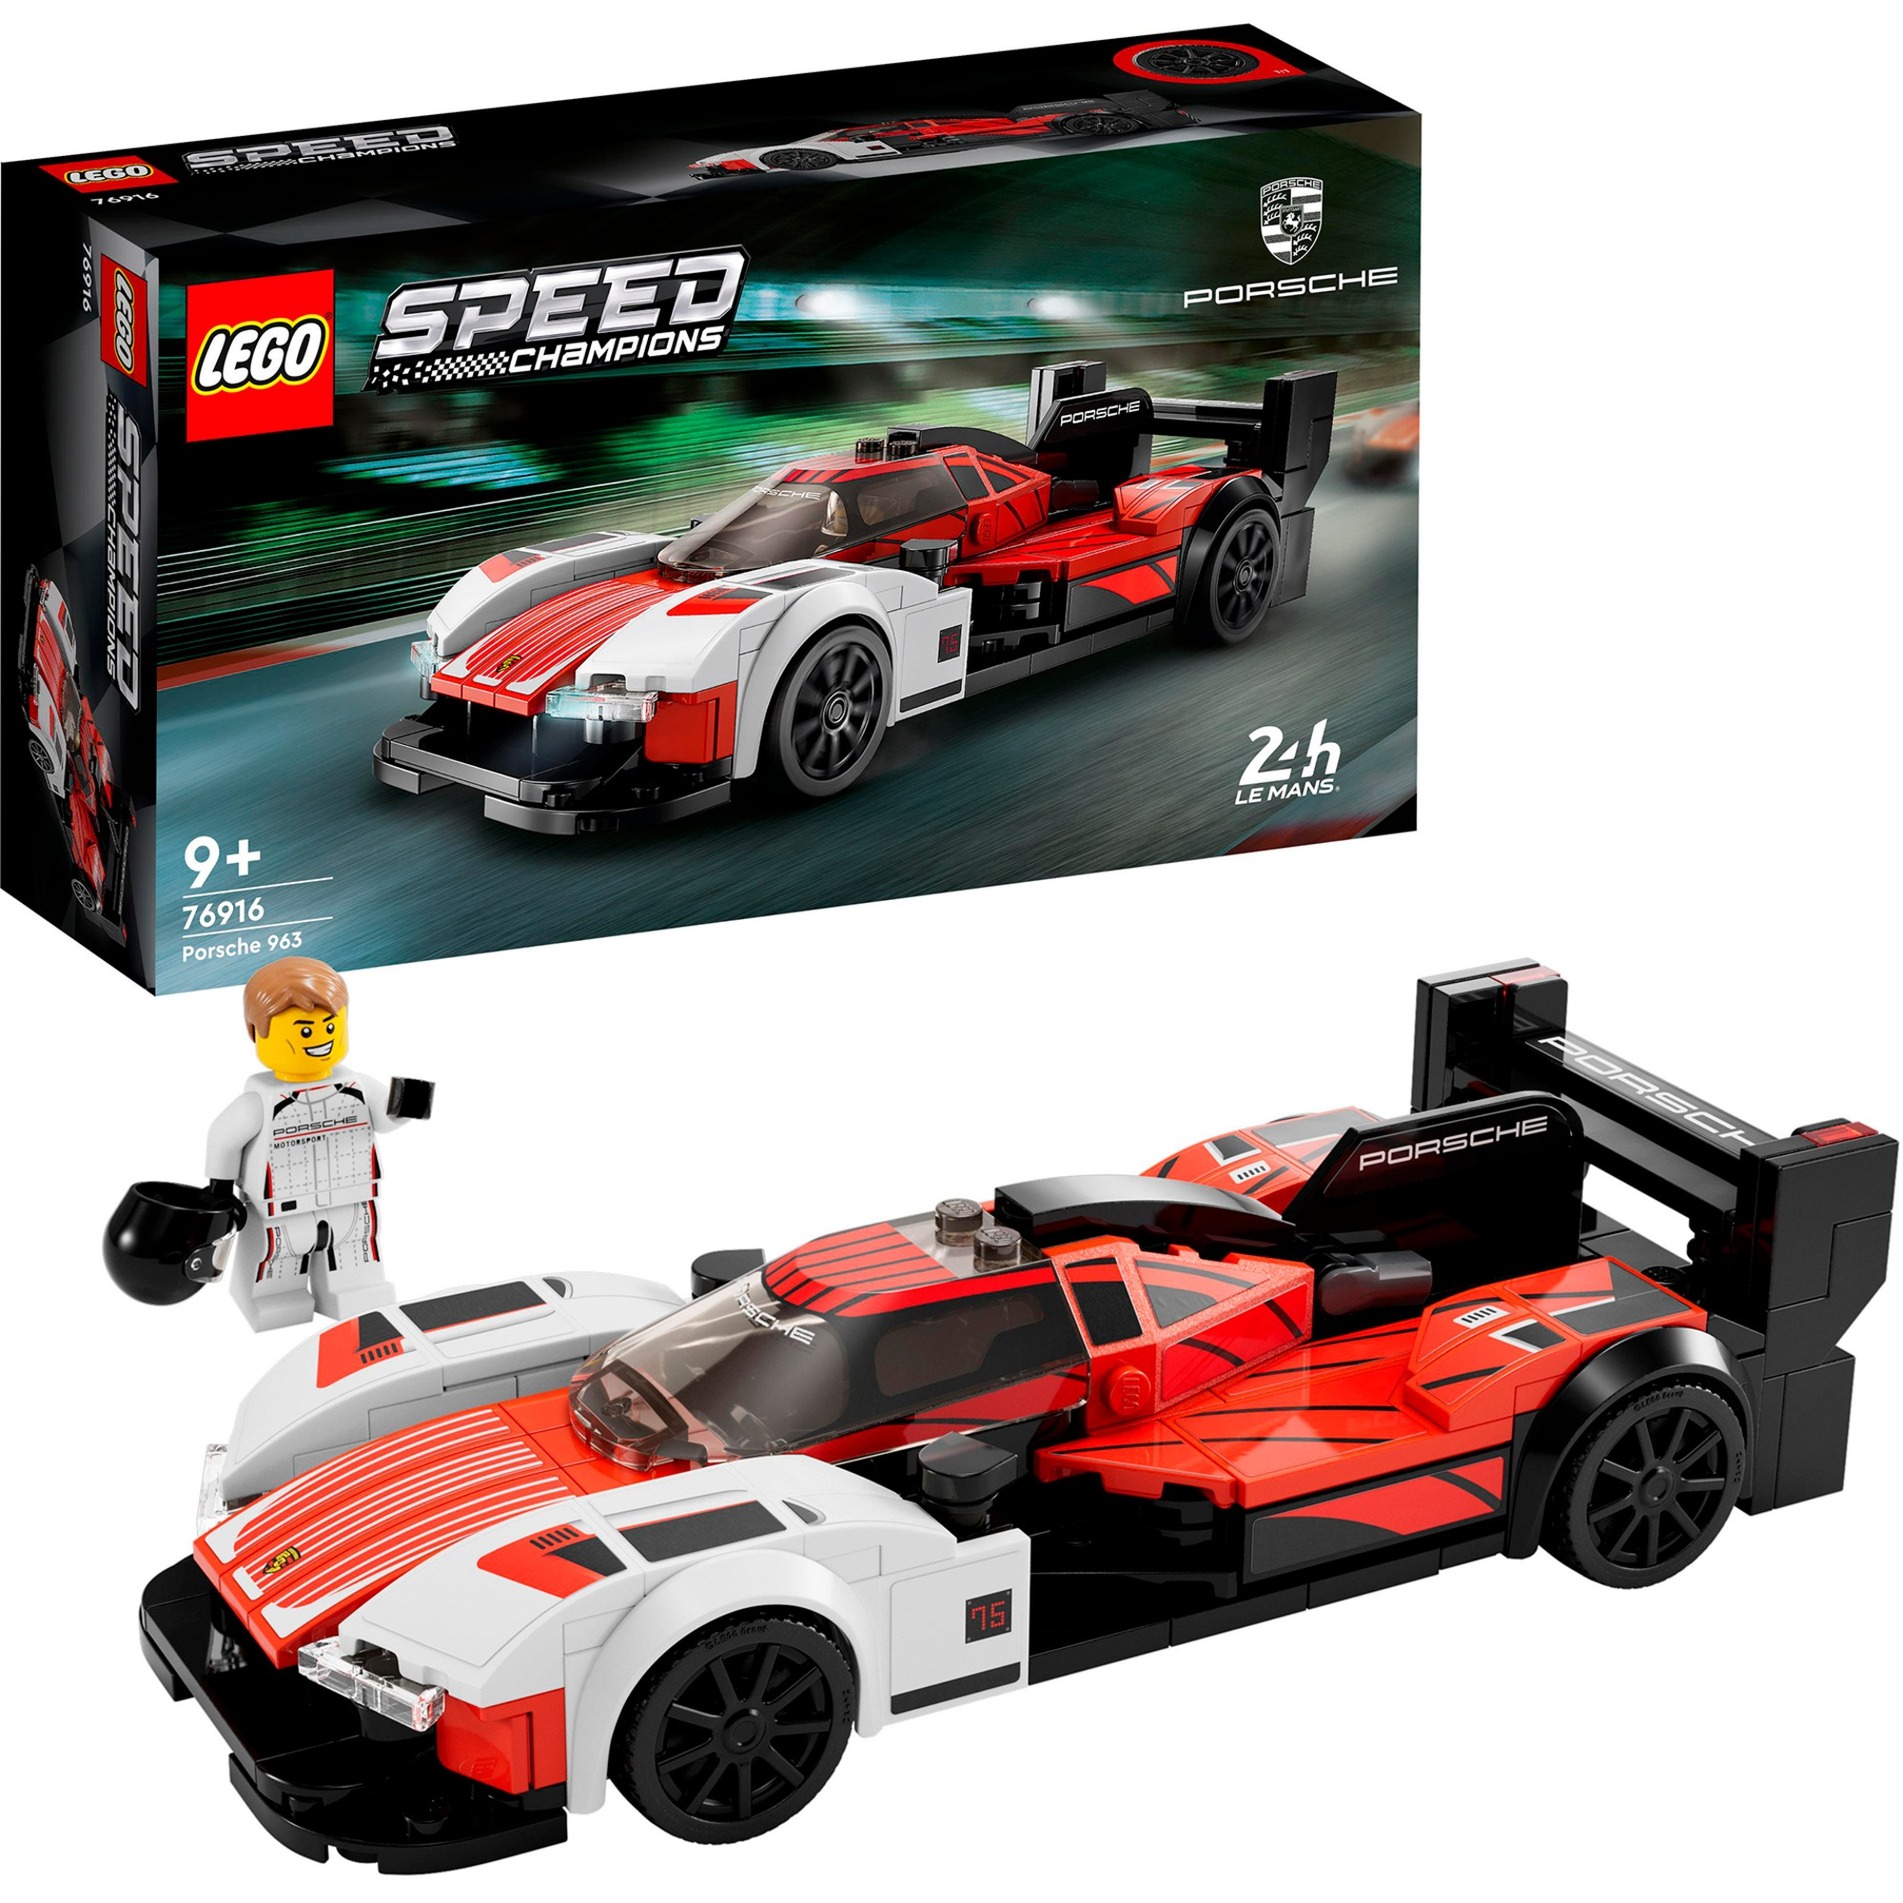 76916 Speed Champions Porsche 963, Konstruktionsspielzeug von Lego